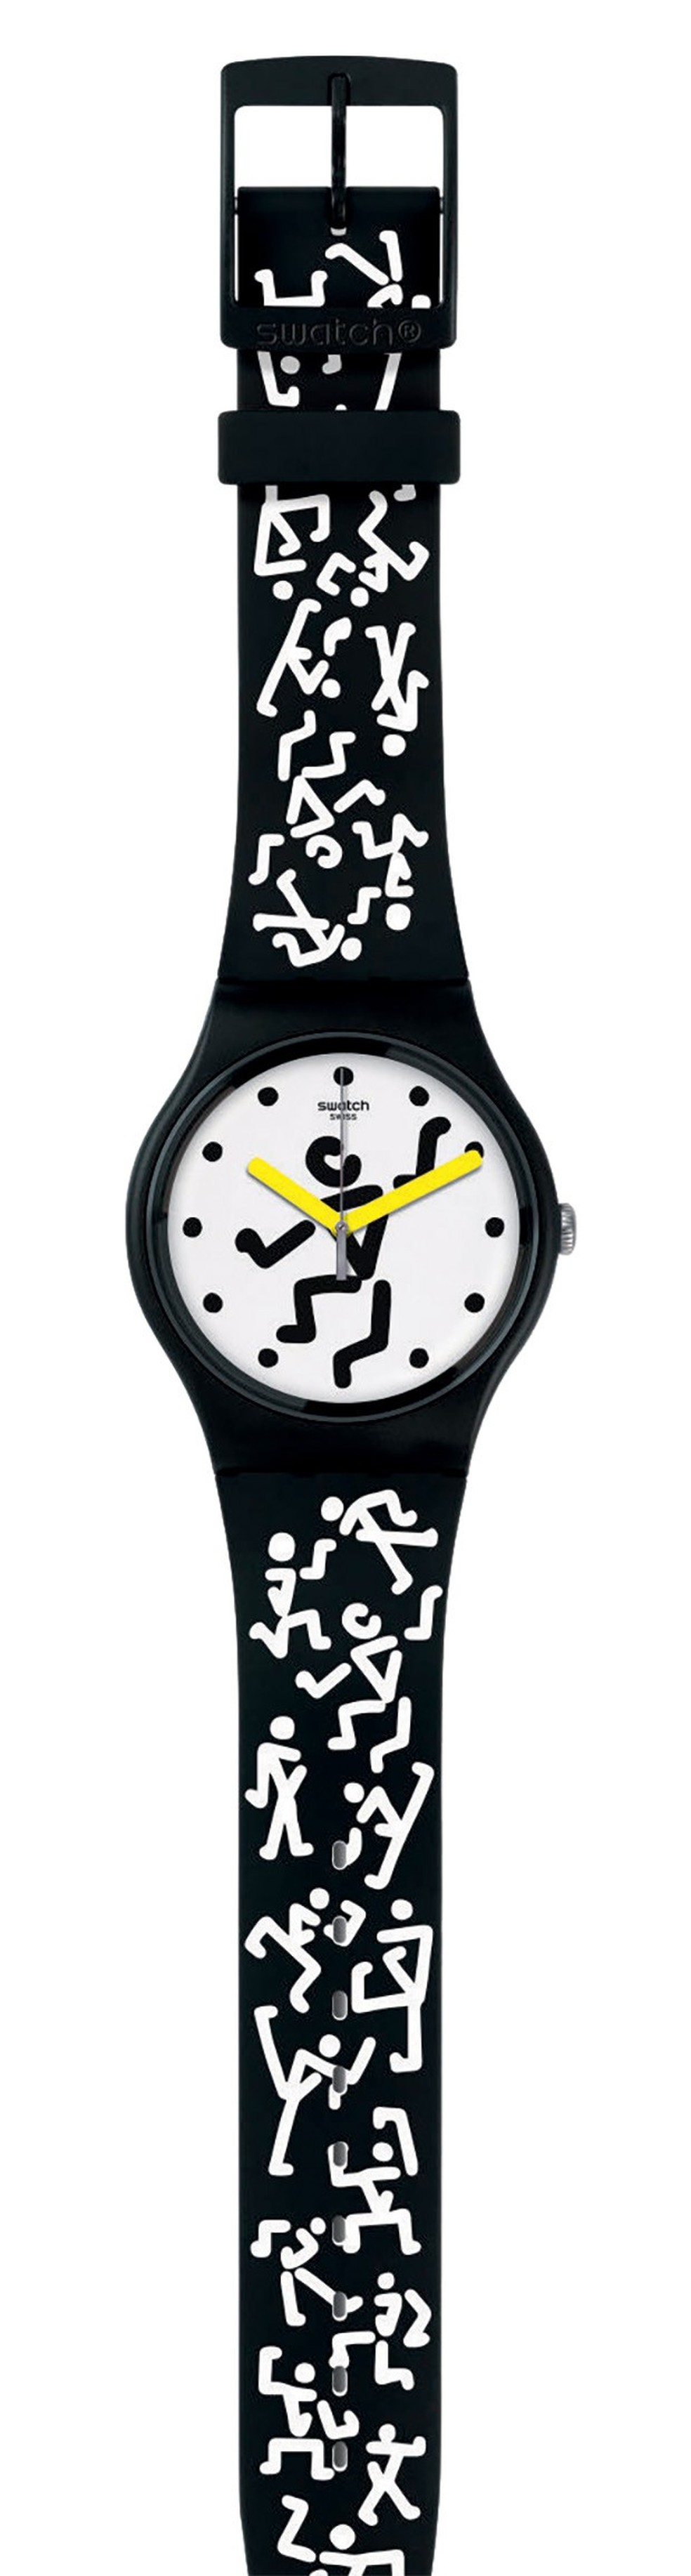 A cantora lançou, no ano passado, uma bem-sucedida parceria com a Swatch, na qual desenvolveu um modelo de relógio para a grife suíça (Foto: Paul & Martin e Divulgação) — Foto: Vogue